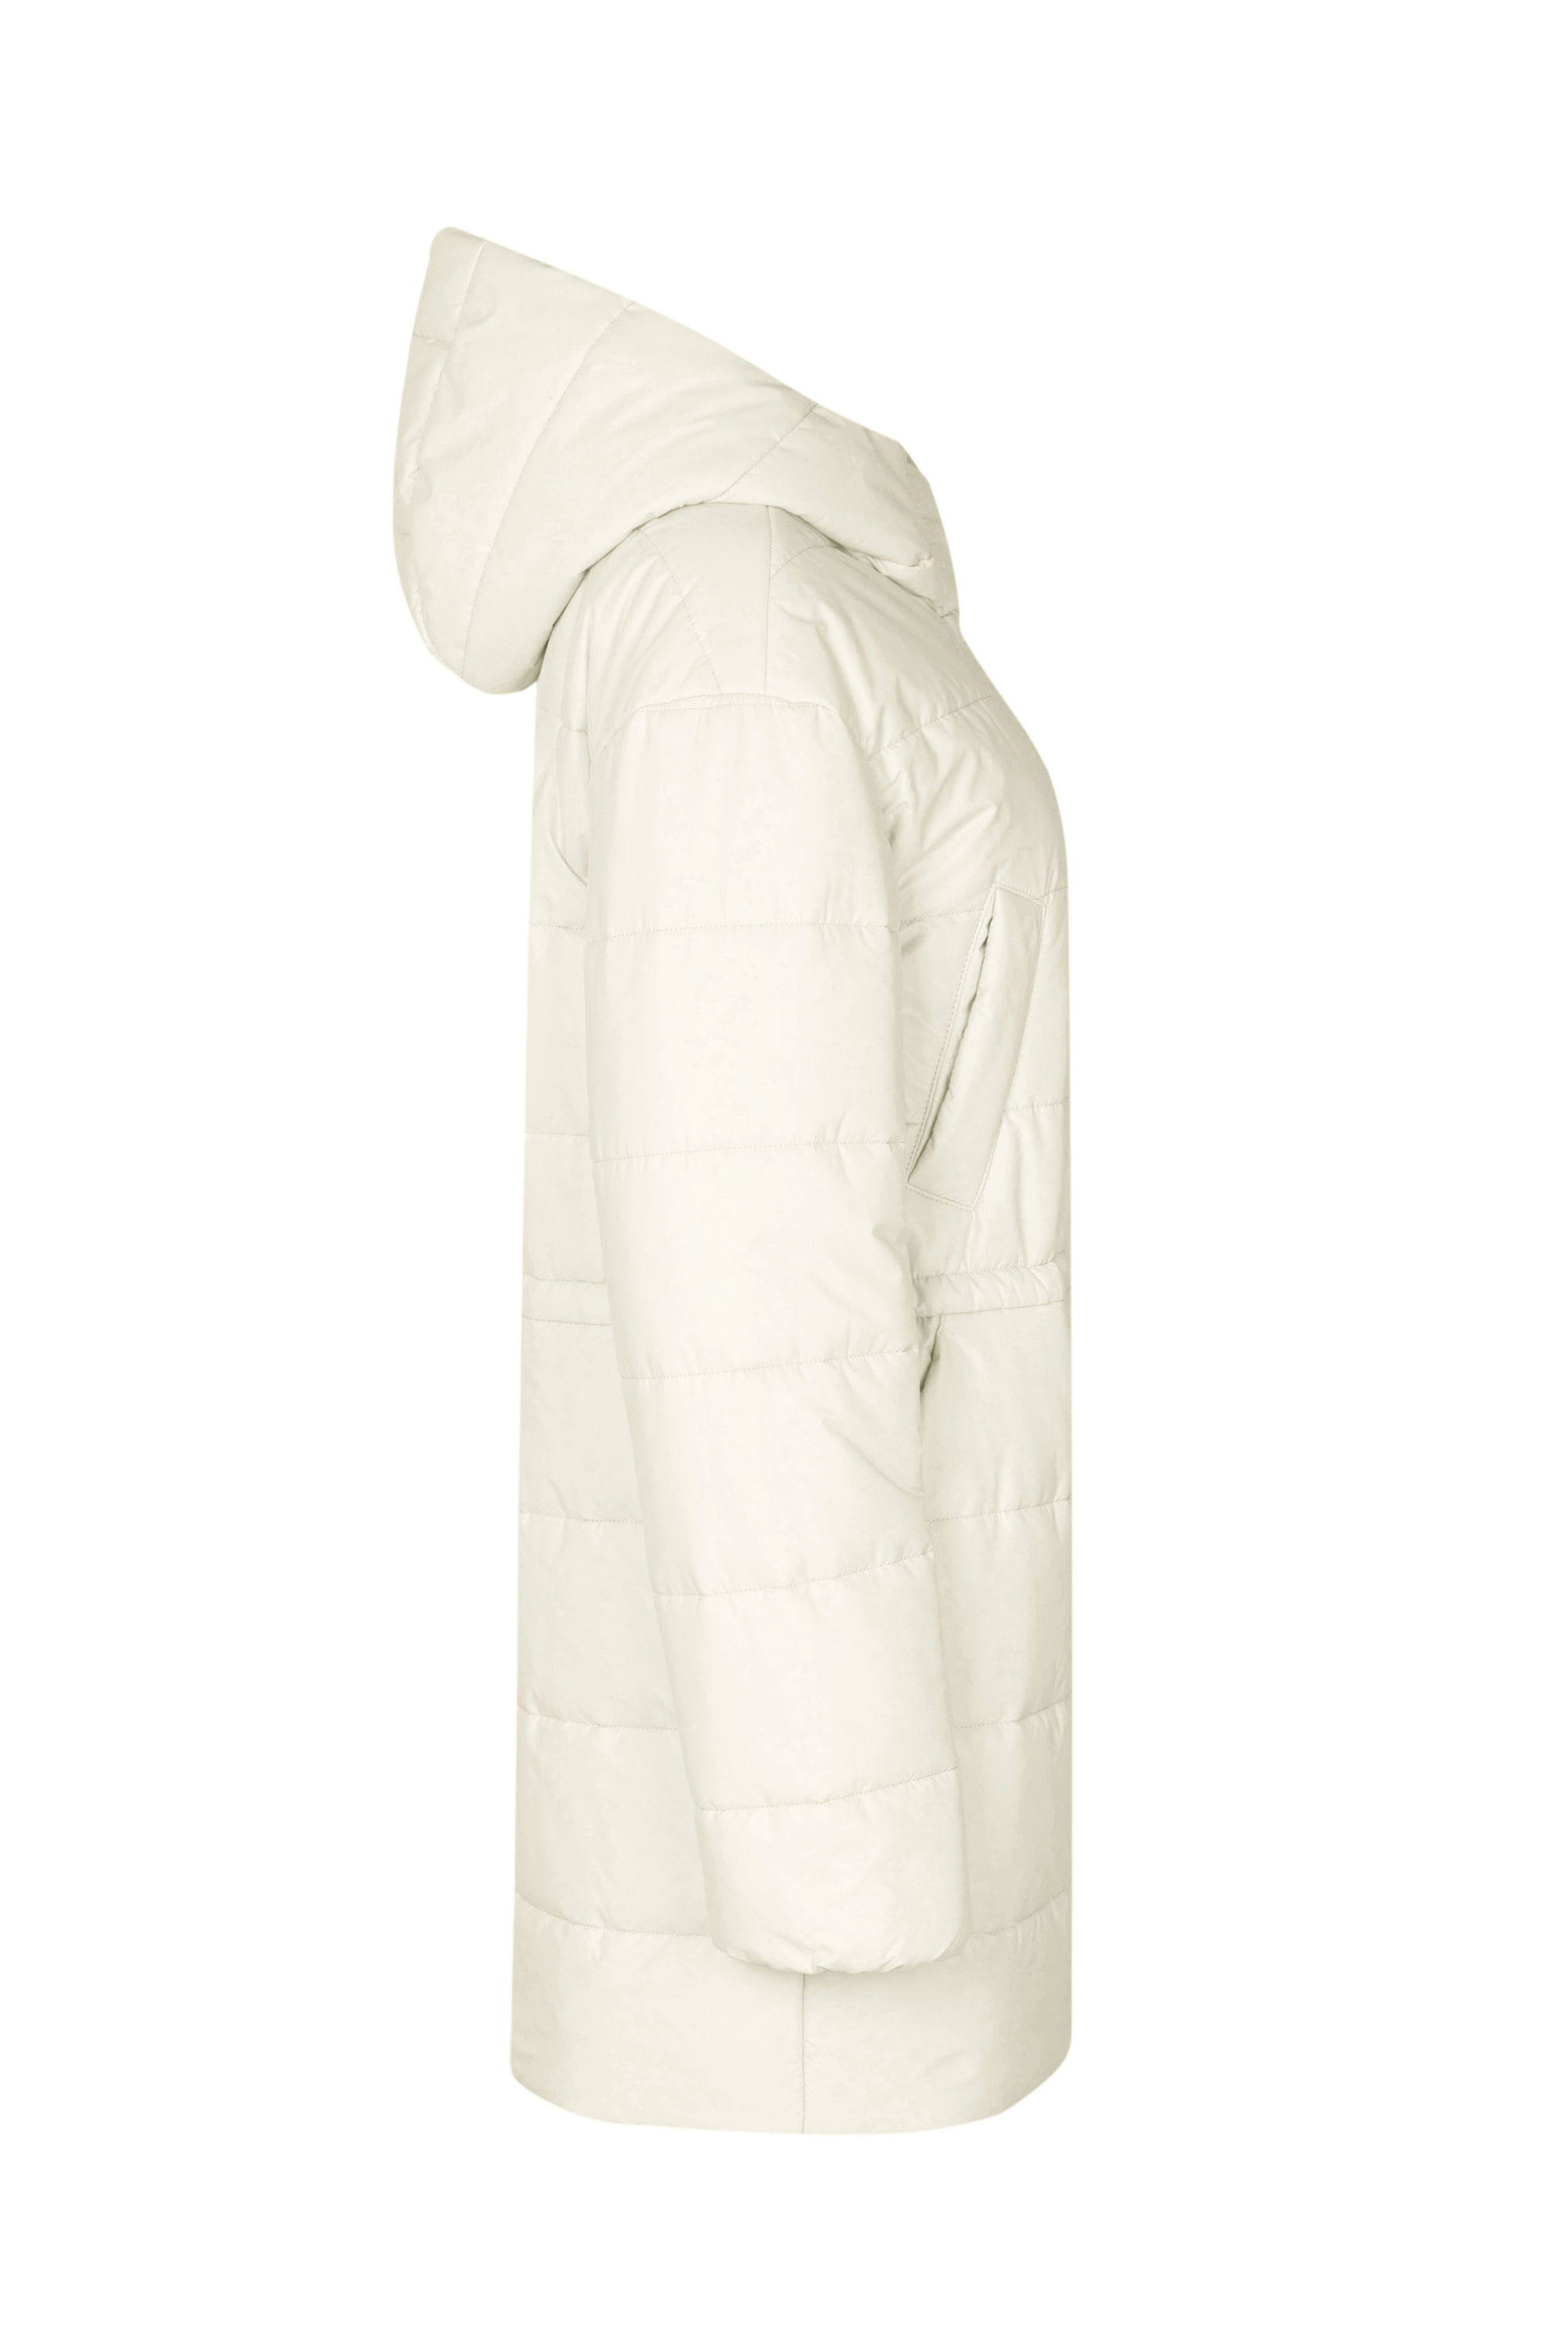 Пальто женское плащевое утепленное 5-13121-1. Фото 5.